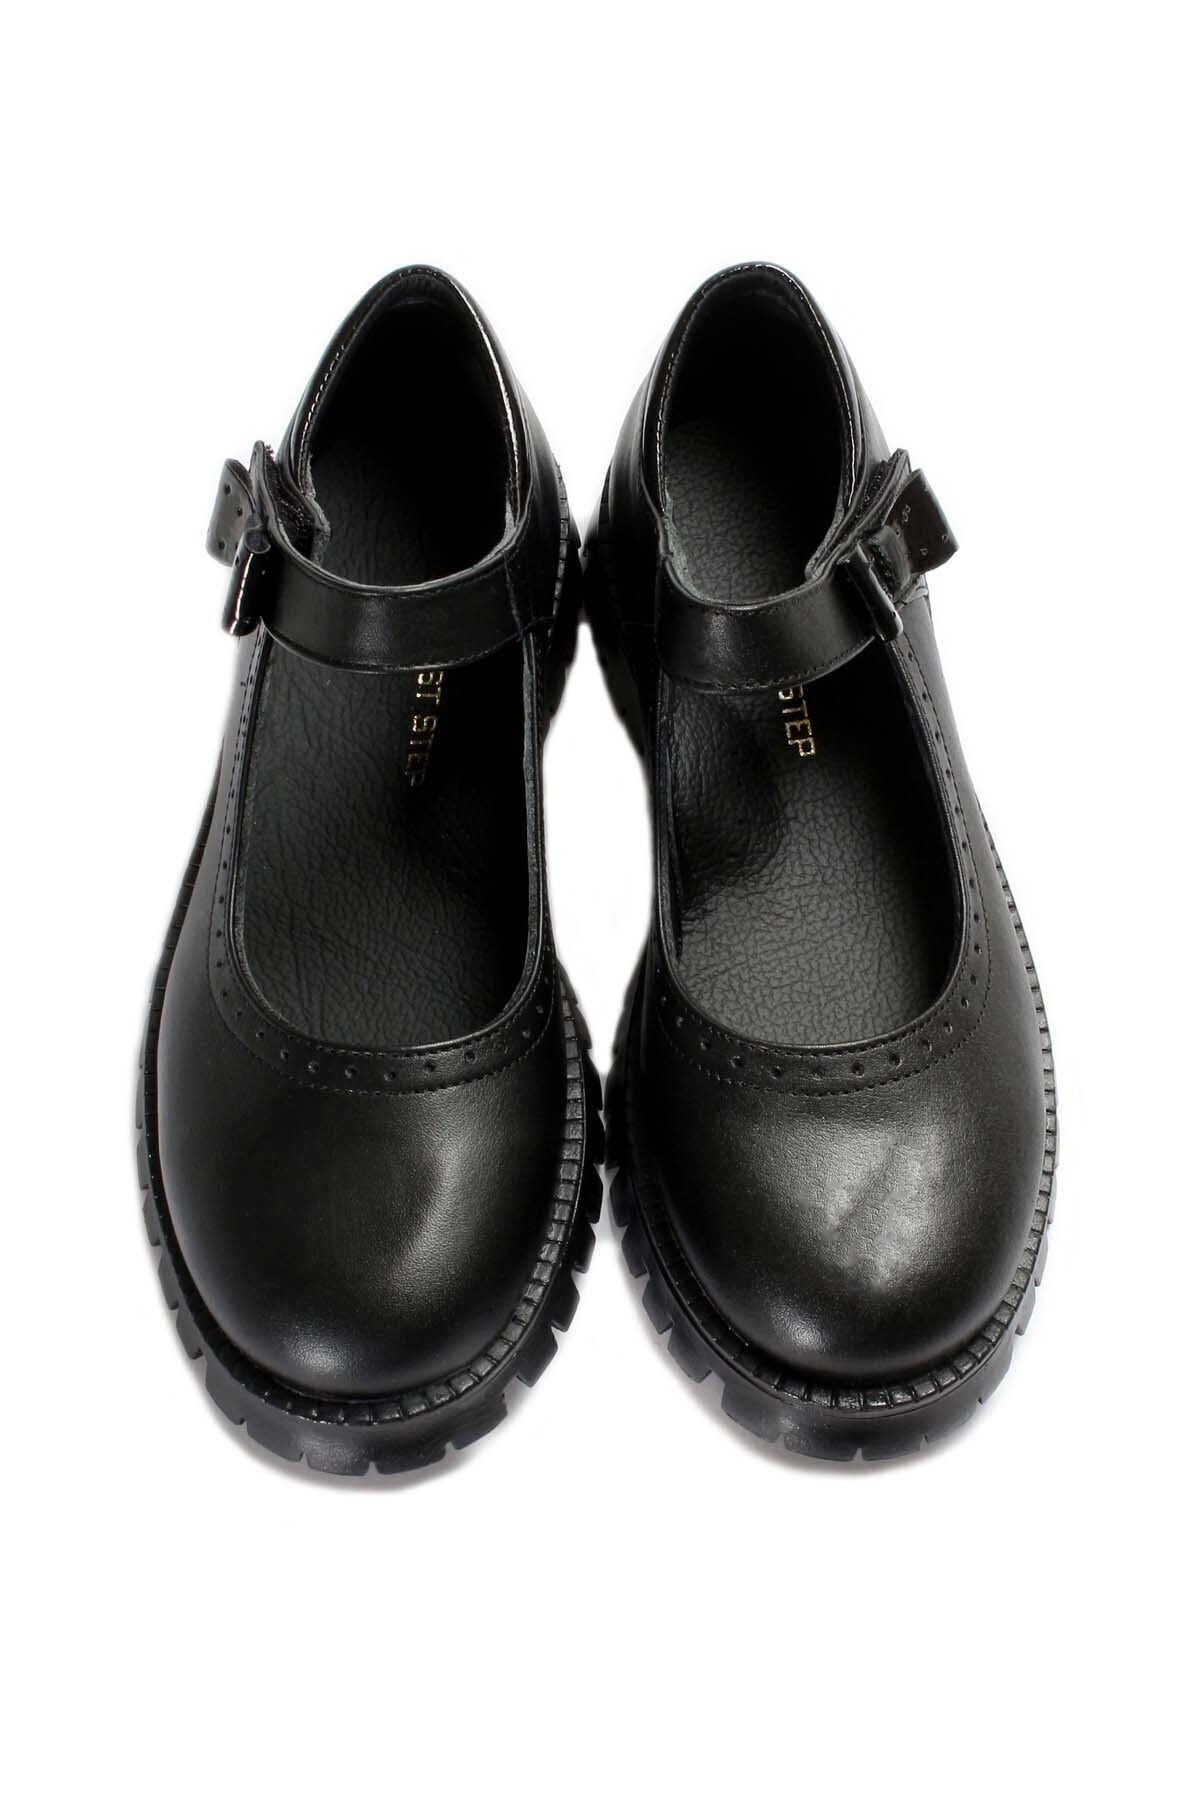 Ayakkabıhane Içi Dışı Hakiki Deri Siyah Kız Çocuk Casual Tarz Ayakkabı Ah07006241912